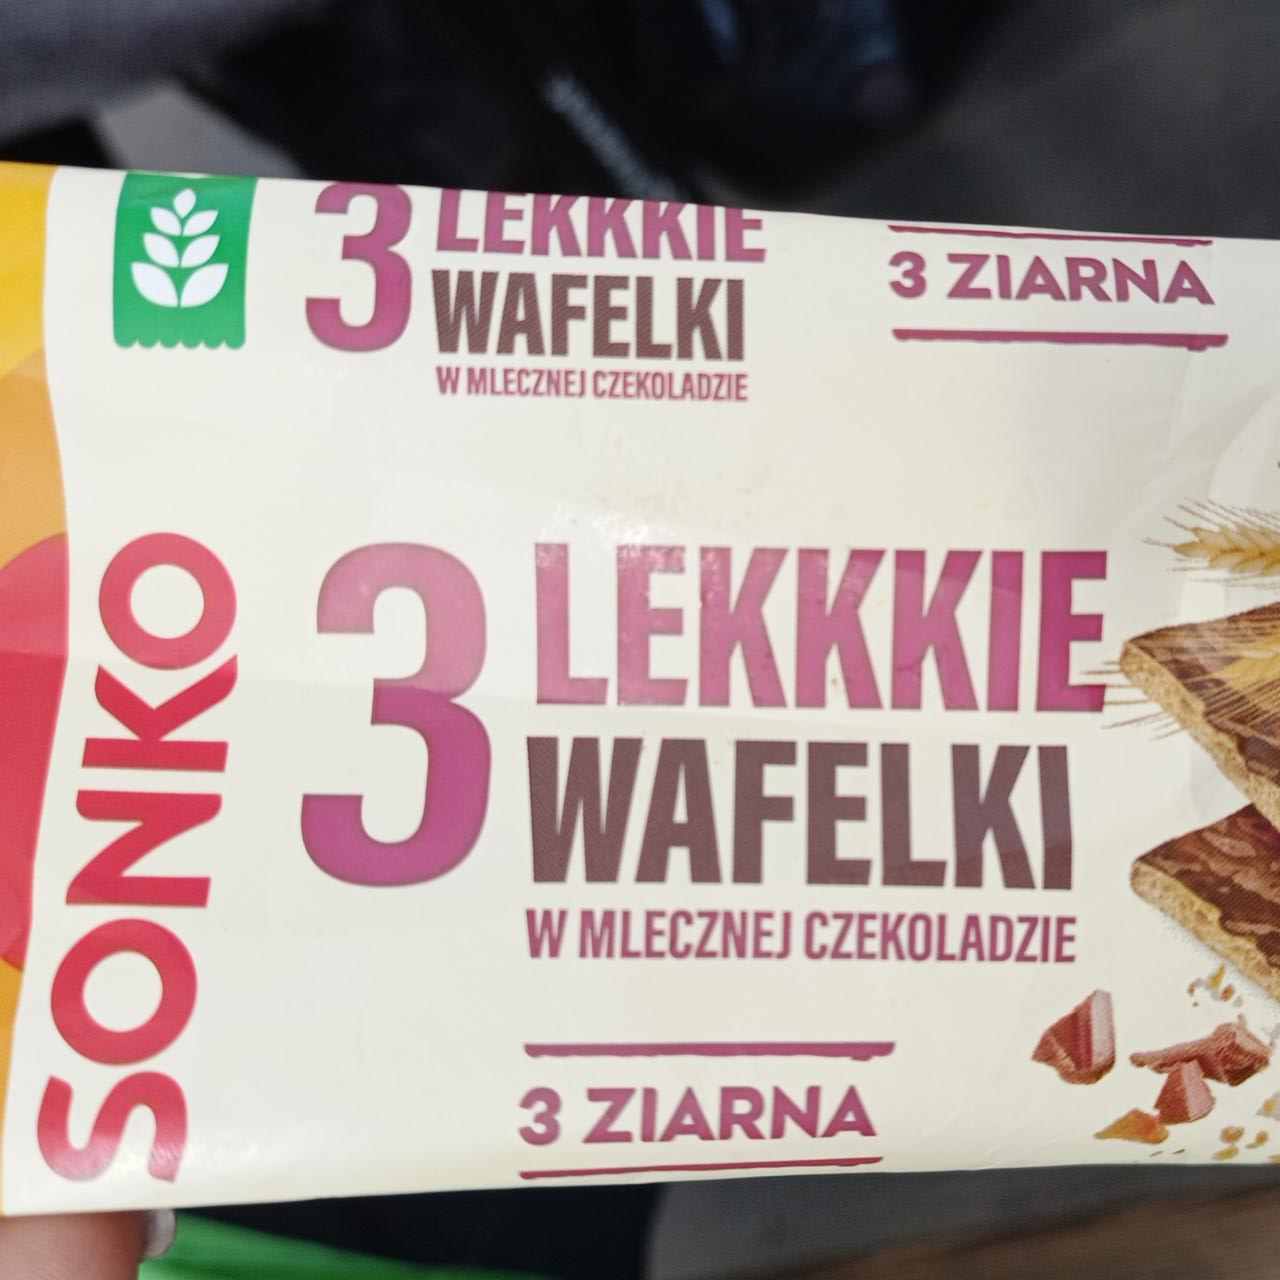 Фото - 3 lekkie wafelki w mlecznej czekoladzie Sonko